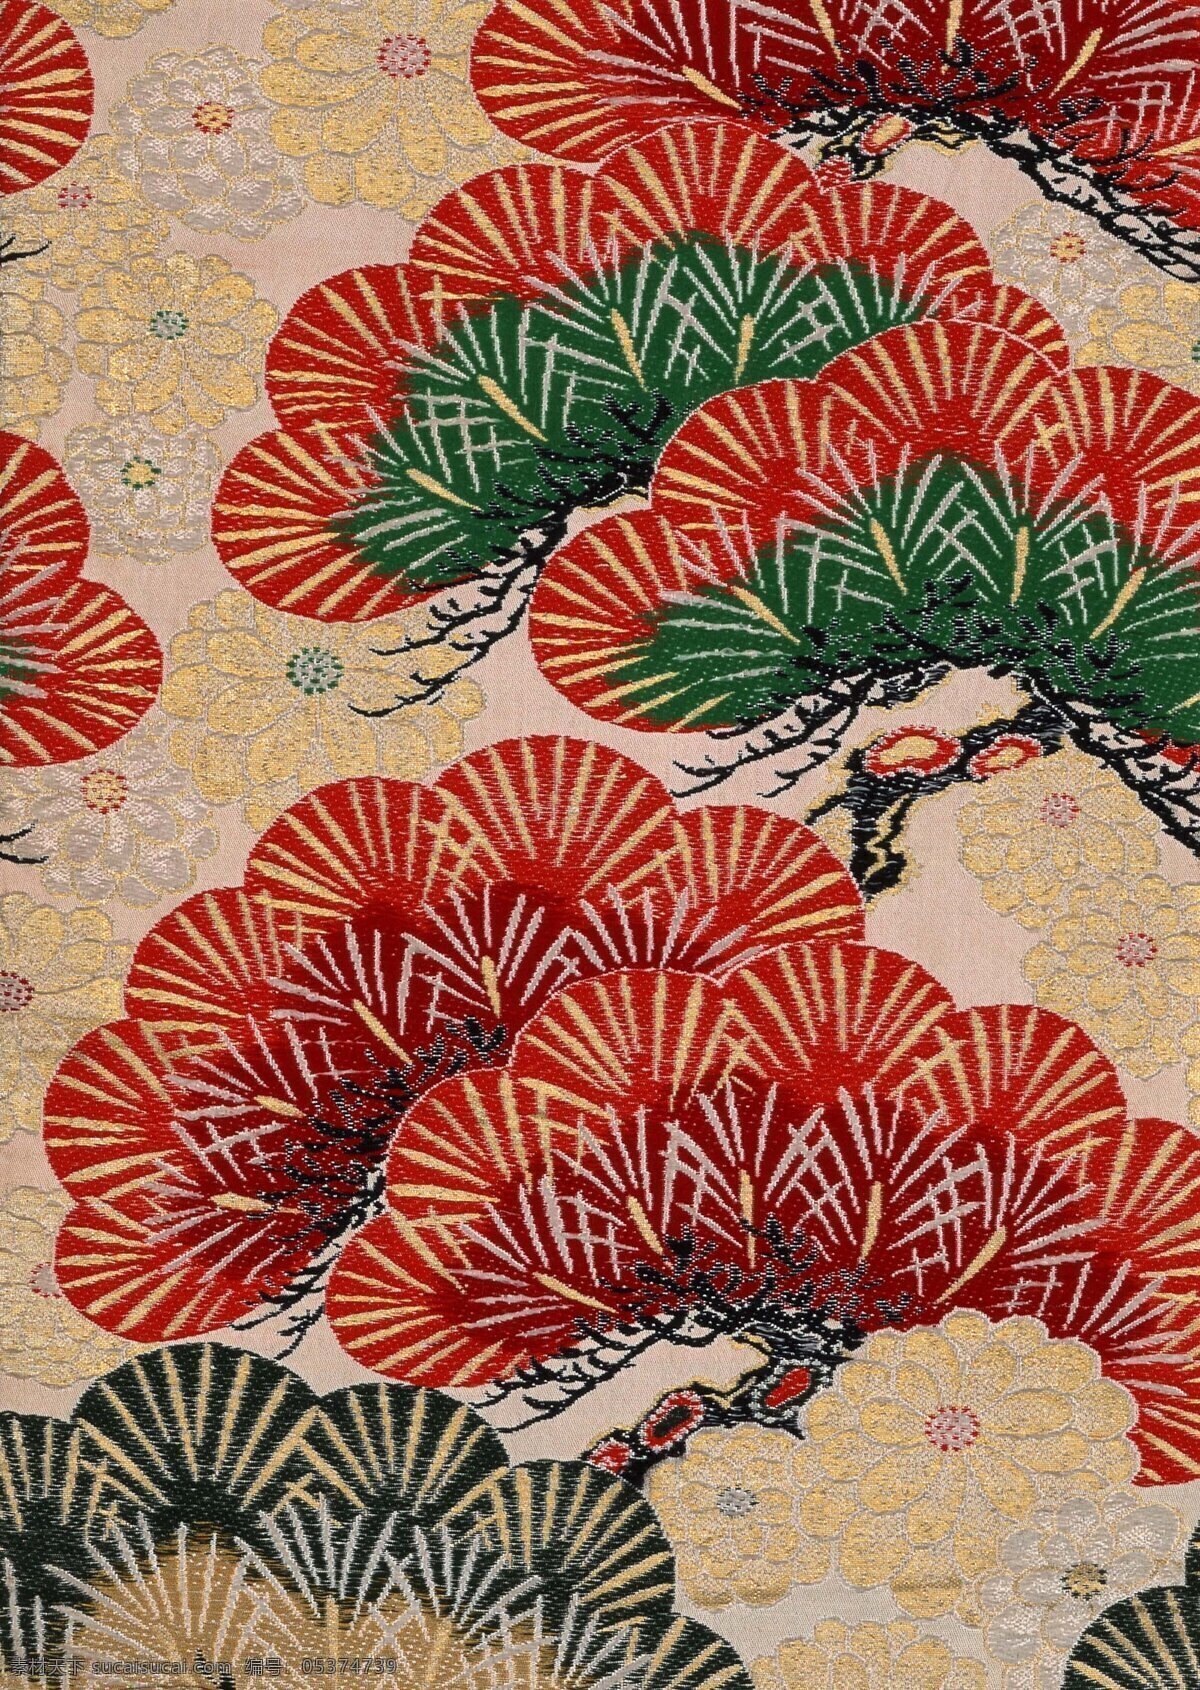 日本屏风画 日本画 日式图案 日式屏风 日本彩绘 传统画 底纹 插画 布纹 绘画图文 文化艺术 绘画书法